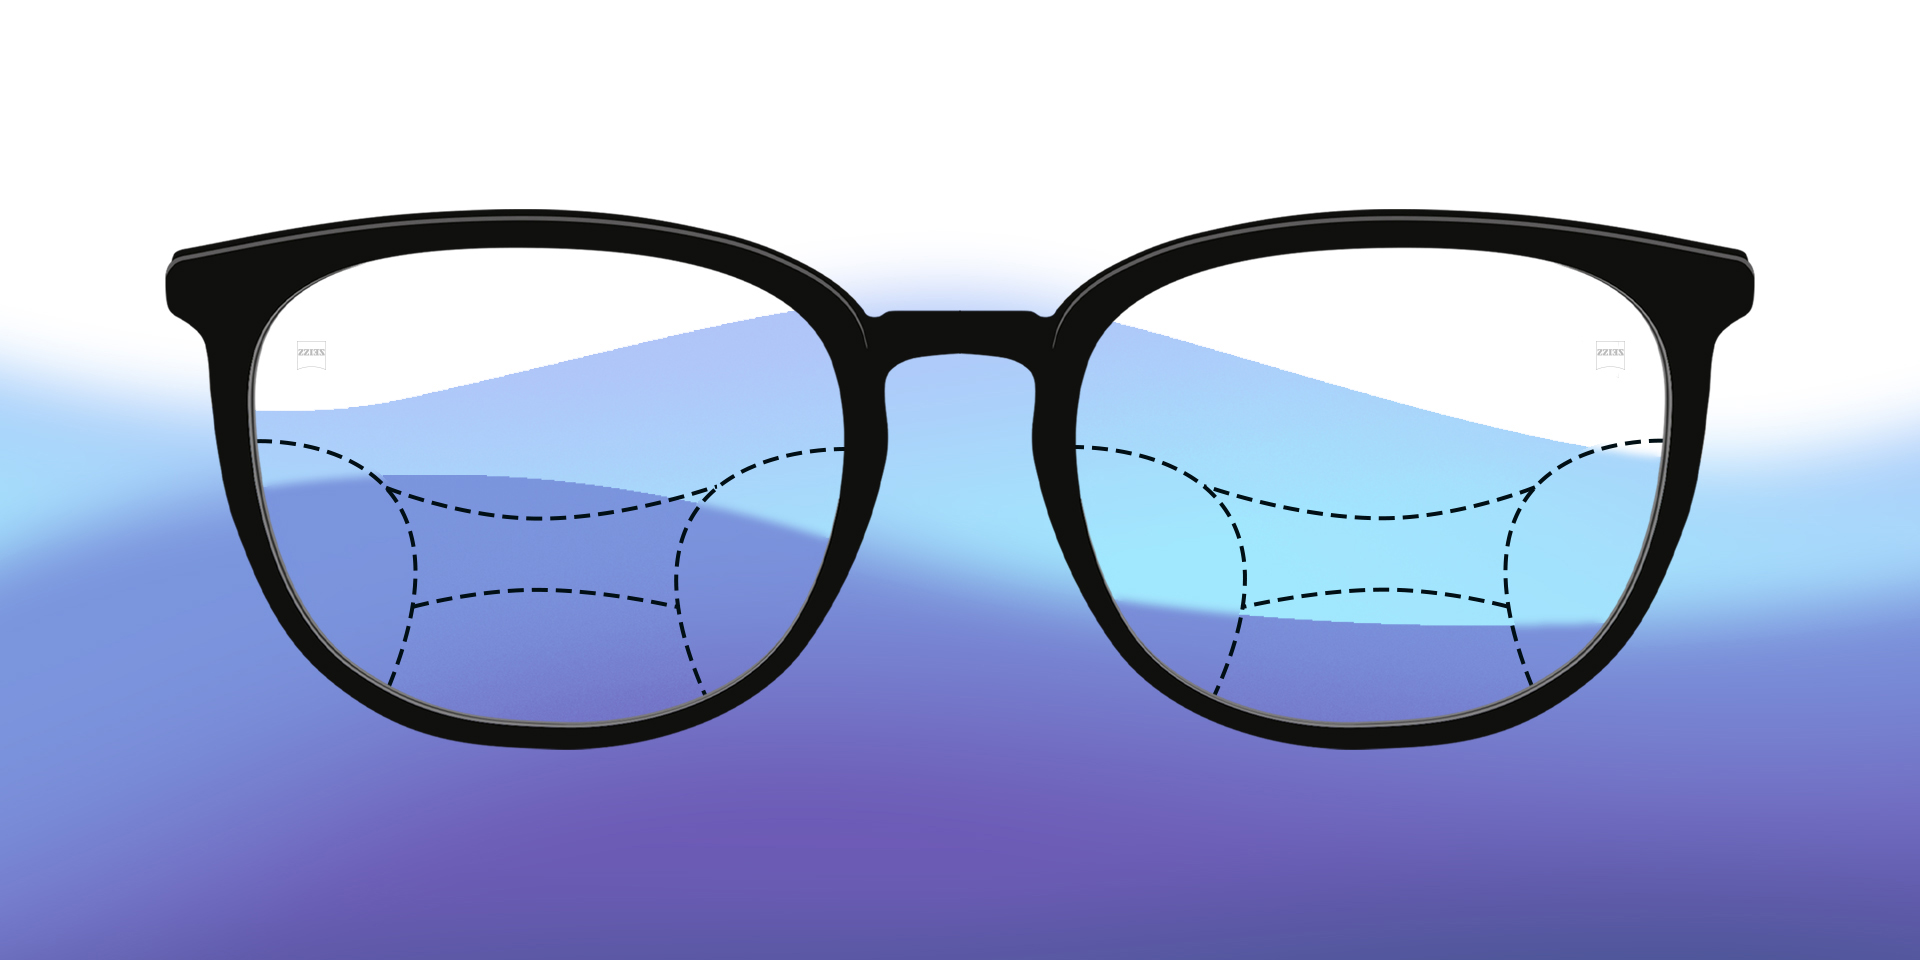 En bild av ett par progressiva glasögon mot en färgad bakgrund.